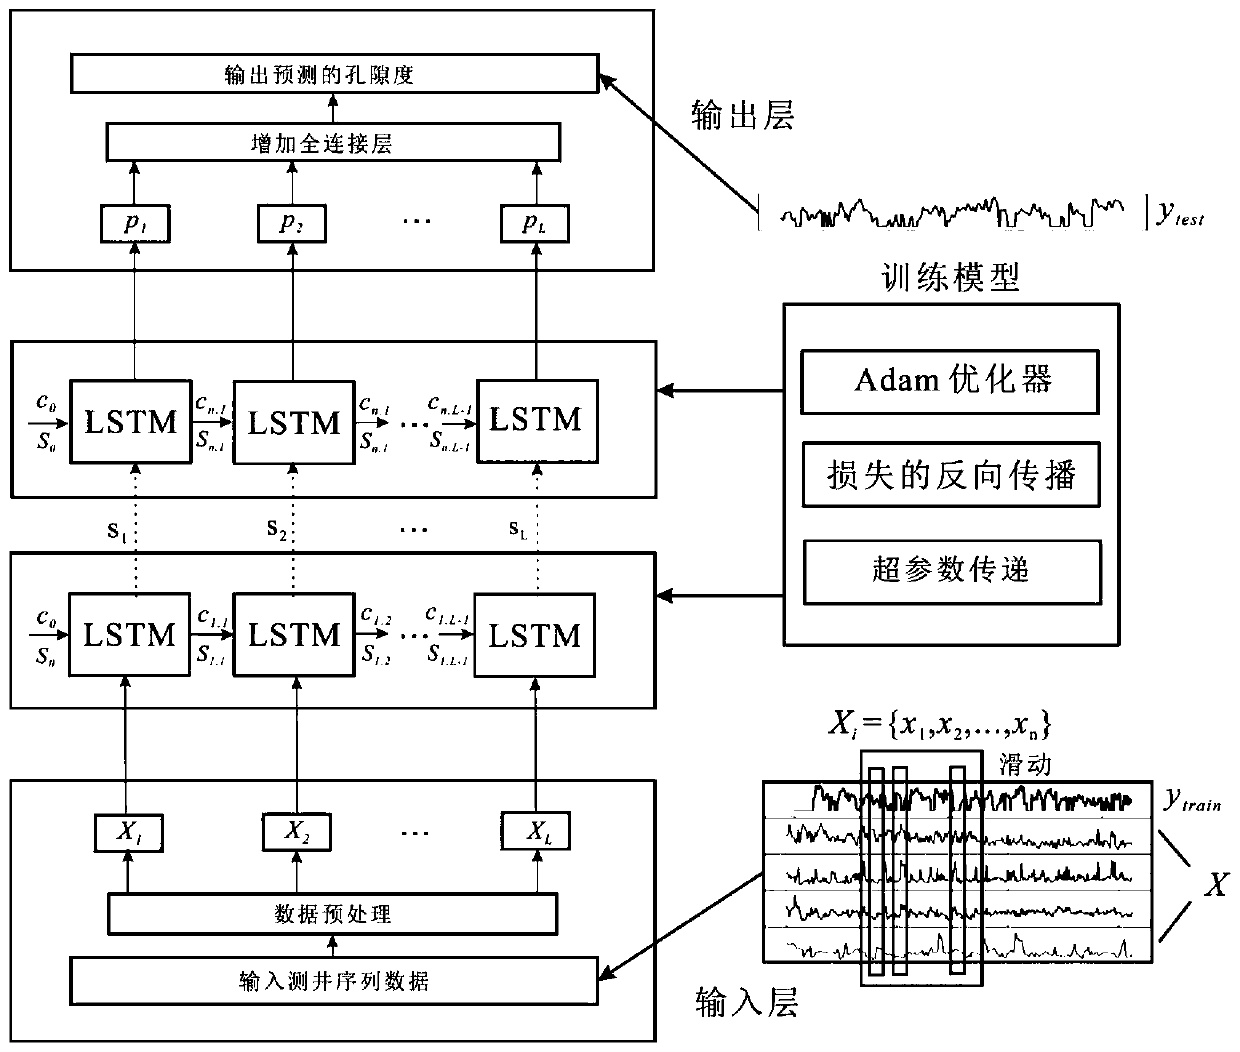 Porosity prediction method based on multi-layer long short-term memory neural network model